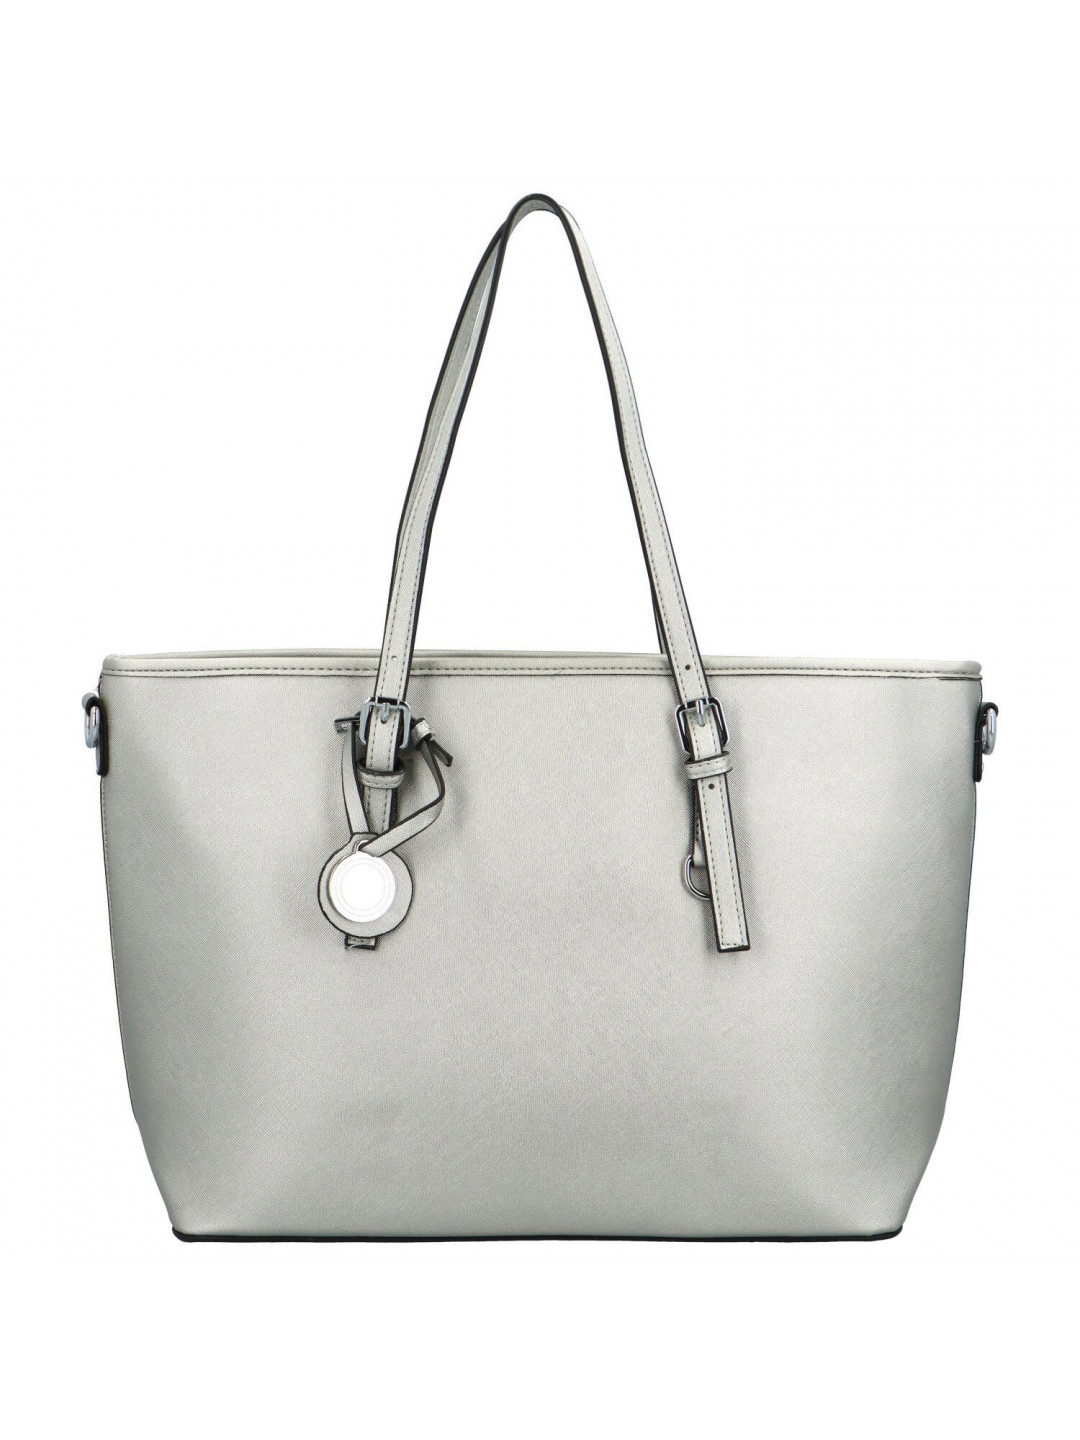 Luxusní dámská kabelka přes rameno Rimissa stříbrná